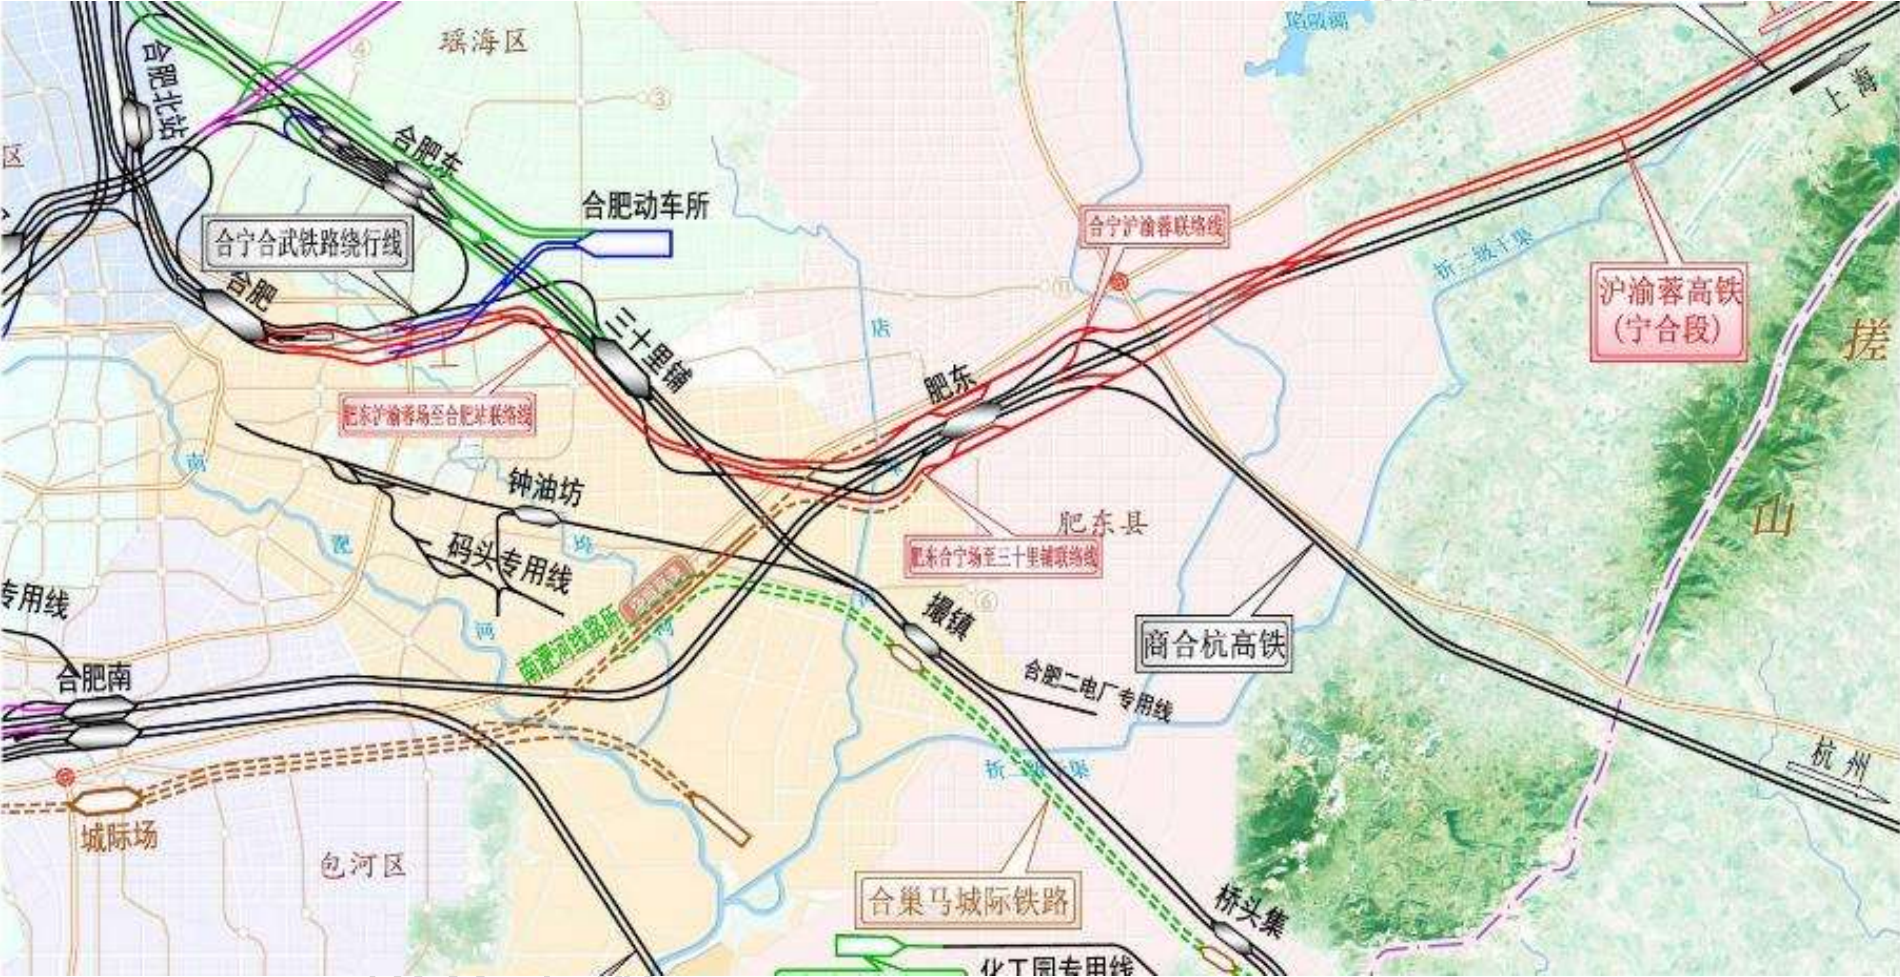 沪渝蓉高铁沪合段环境影响报告书内容细节分析